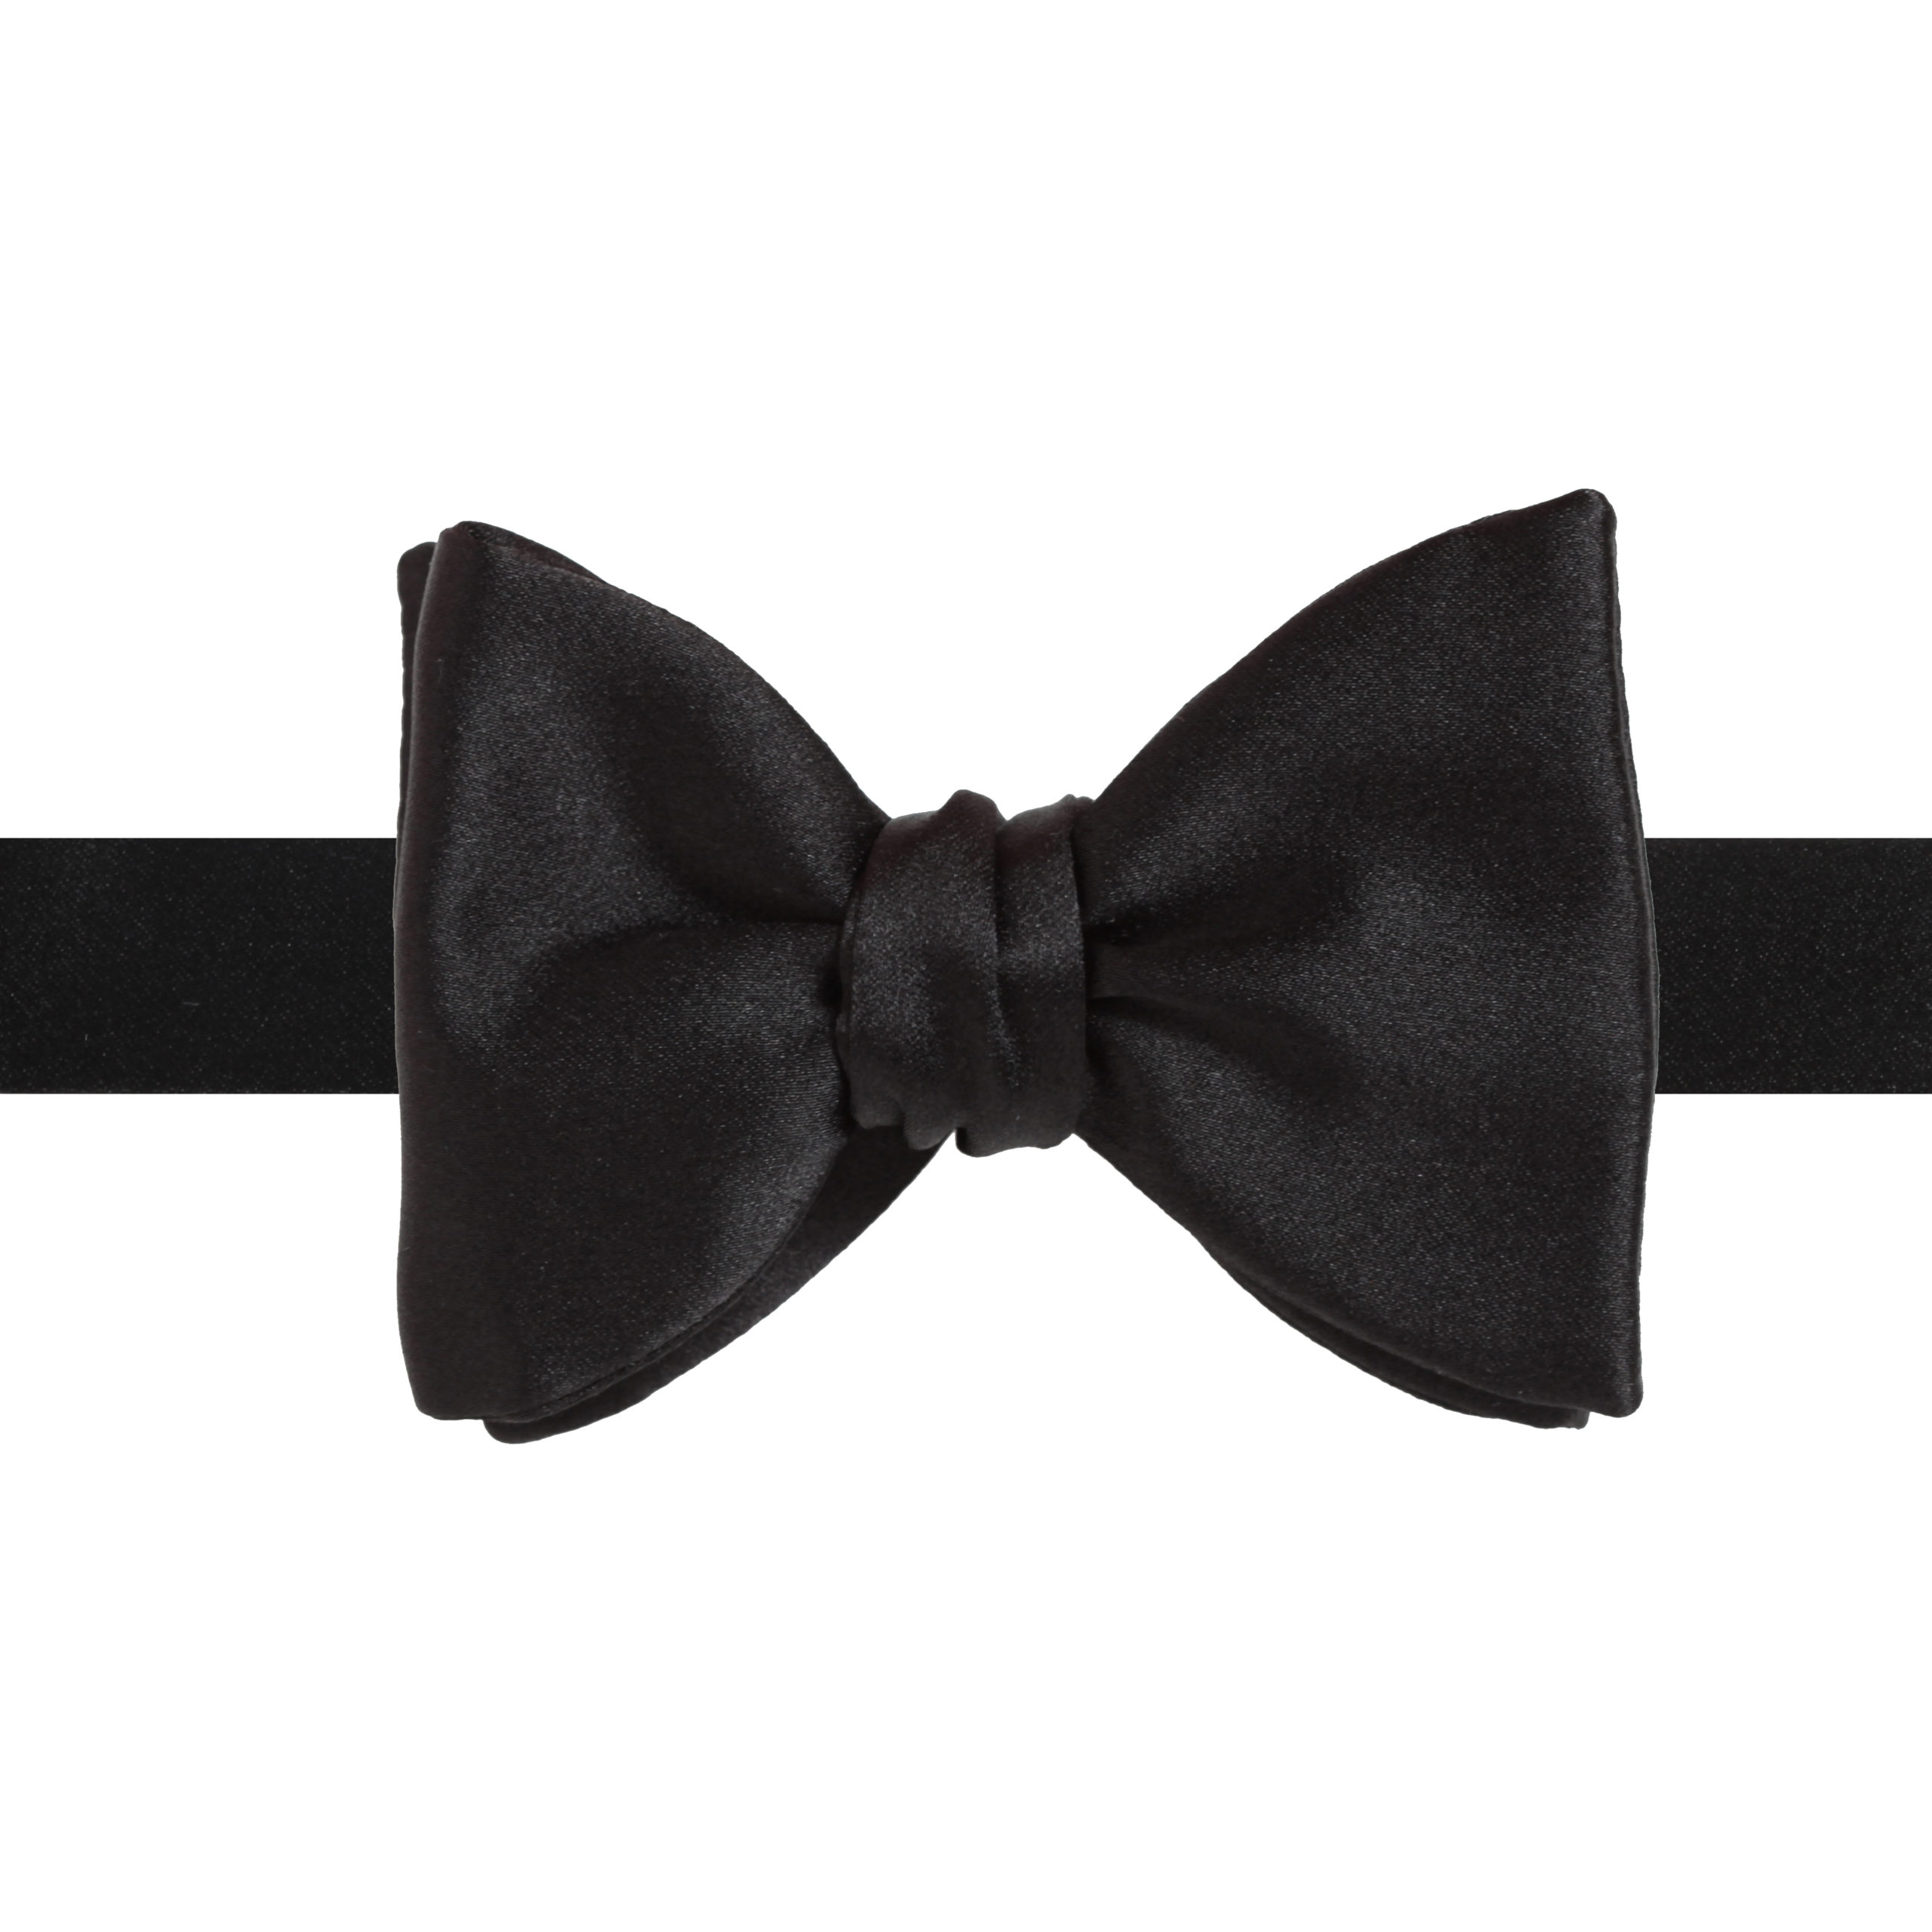 Modern Black Tie: A Guide - la Bowtique Bowties